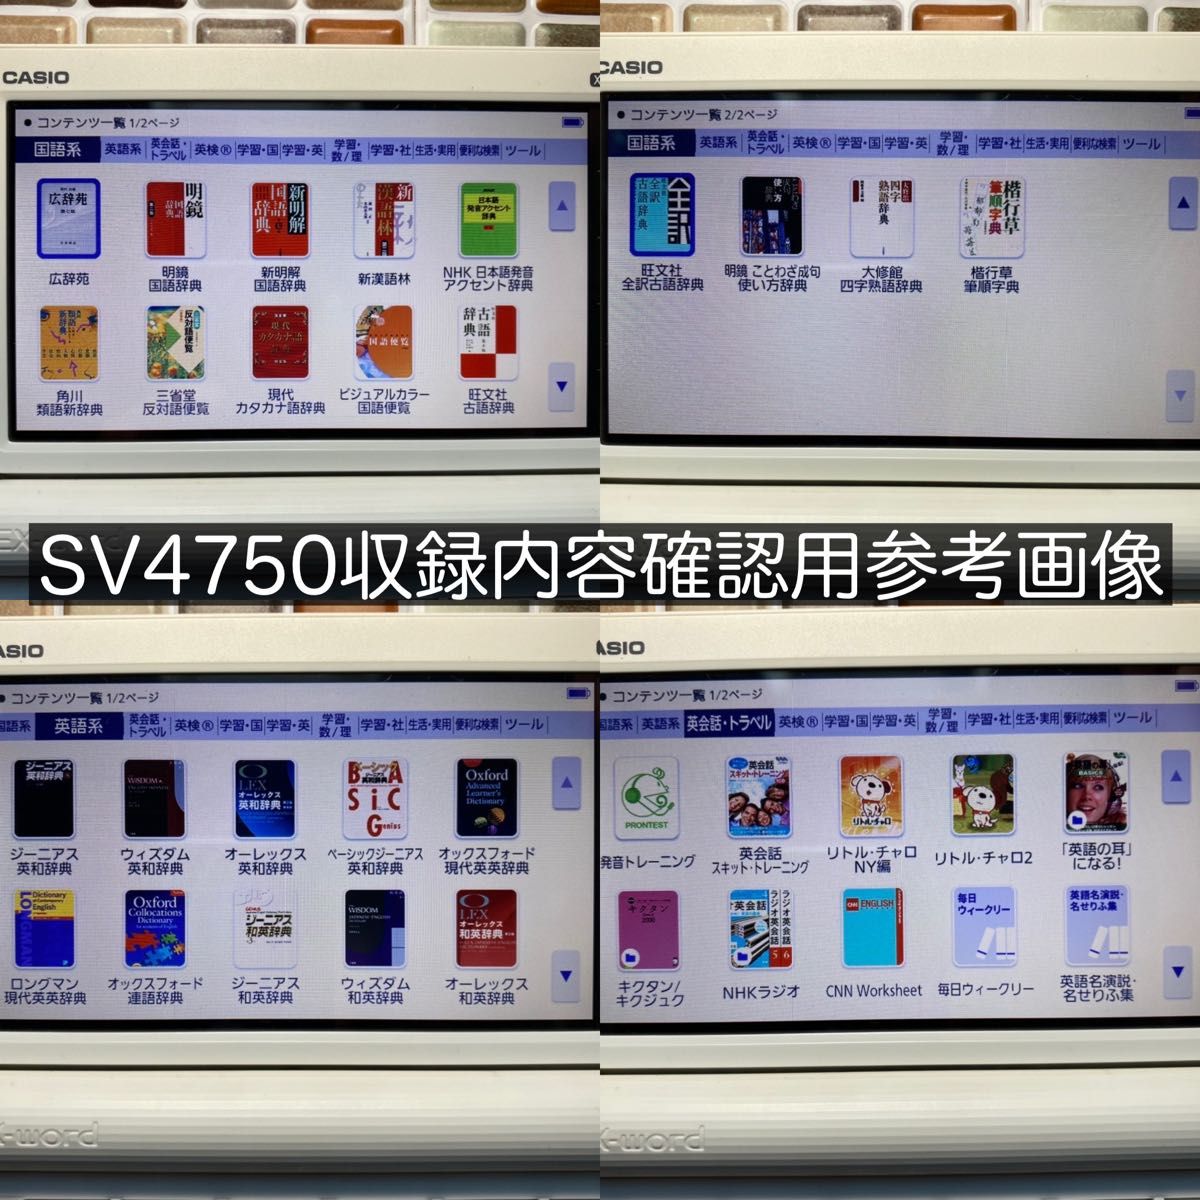 2021年 高校生モデル XD-SV4750 カシオ CASIO 電子辞書 EX-word エクスワード 英検 GTEC TEAP